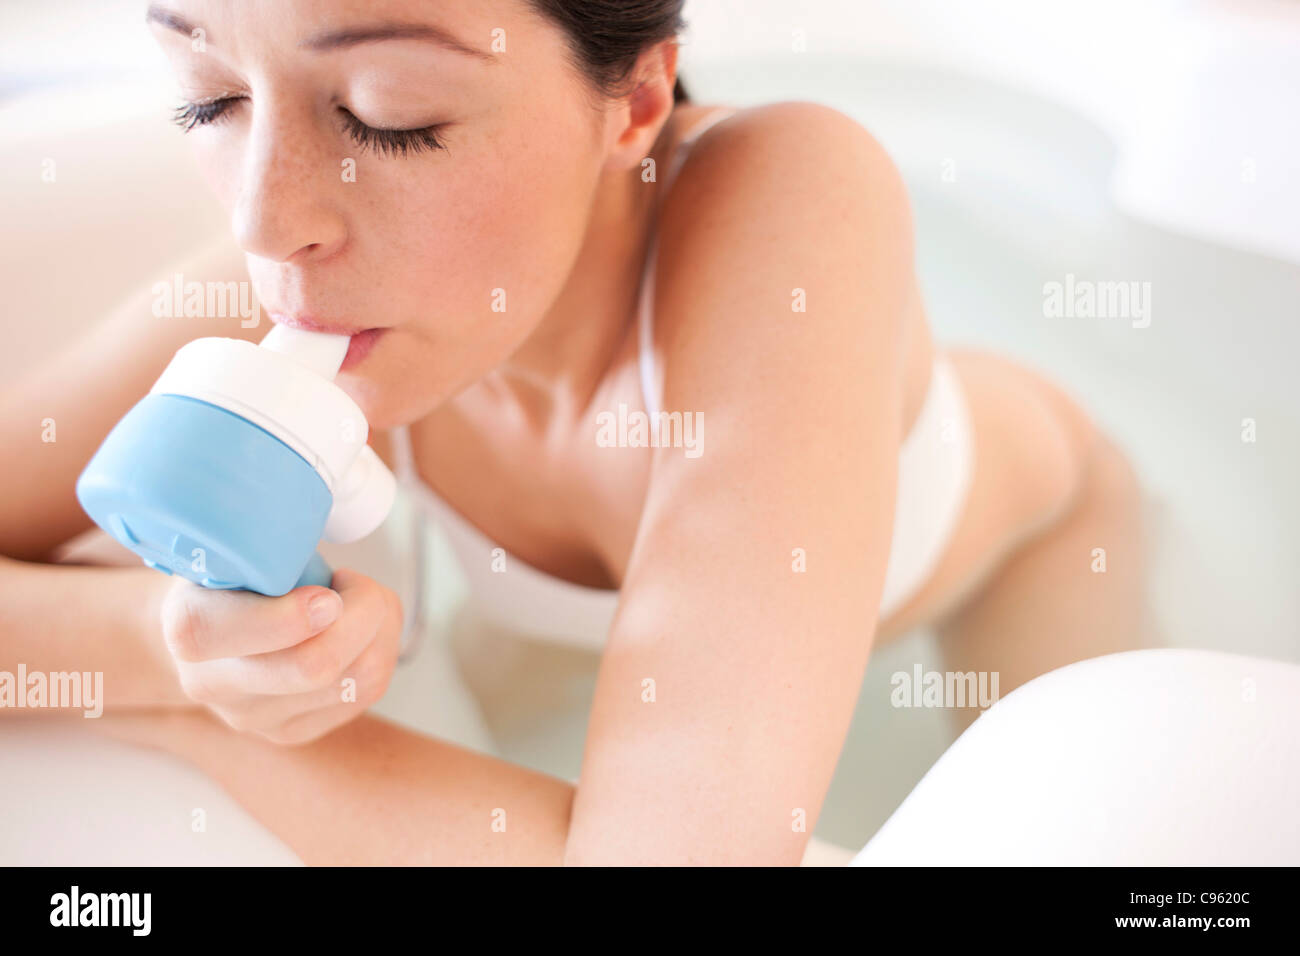 La naissance de l'eau. Femme enceinte de prendre du gaz et de l'air dans une piscine d'accouchement. Banque D'Images